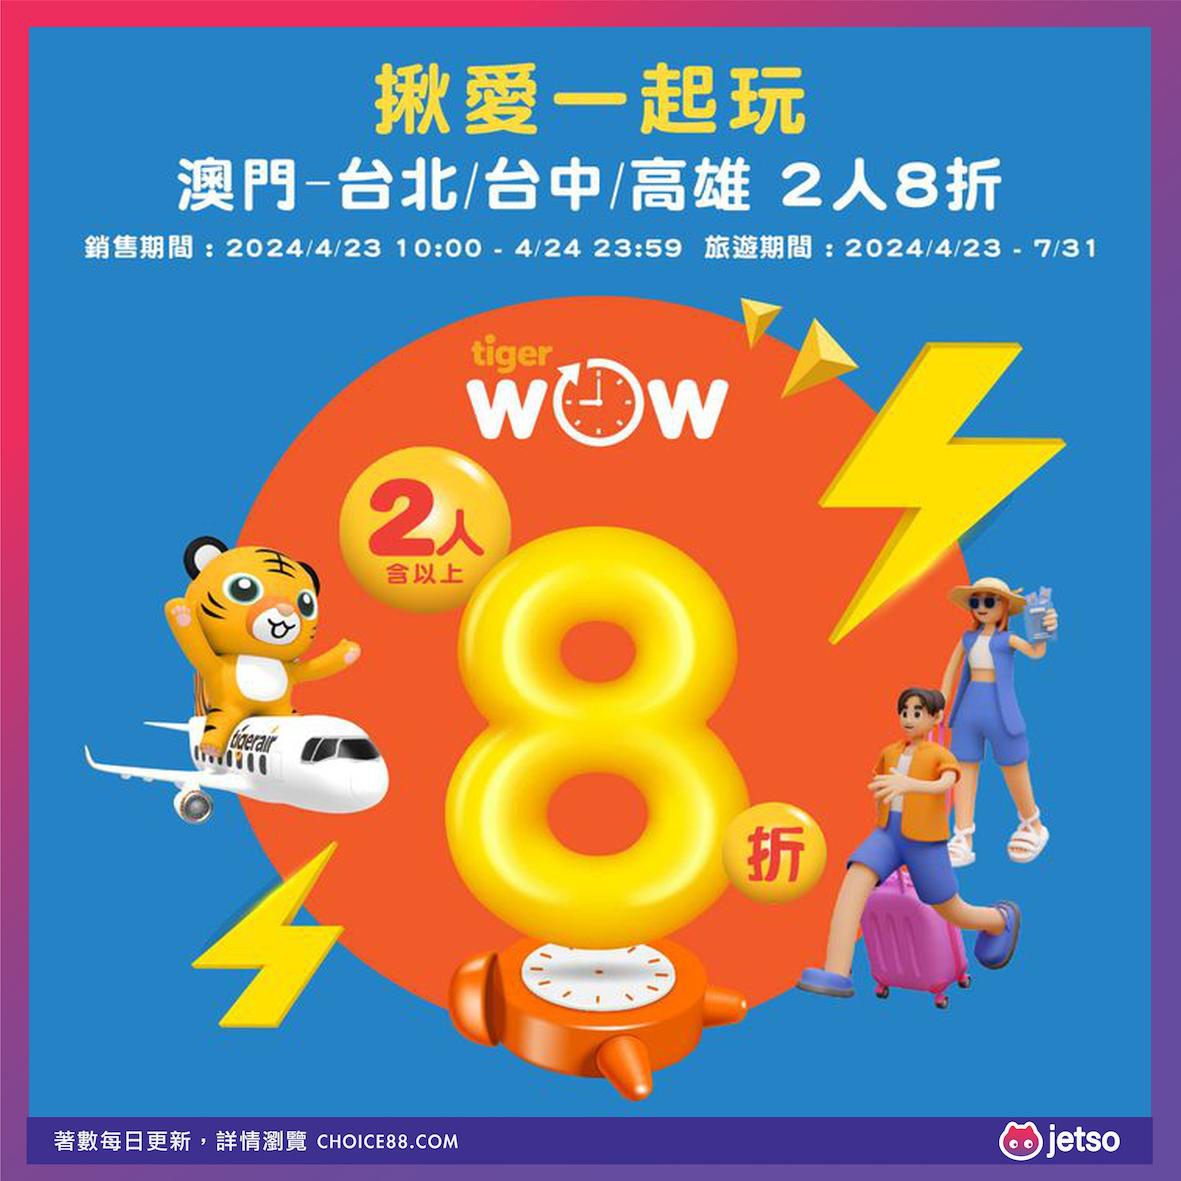 台湾虎航 : [机票优惠]台北、台中、高雄8折旅游优惠